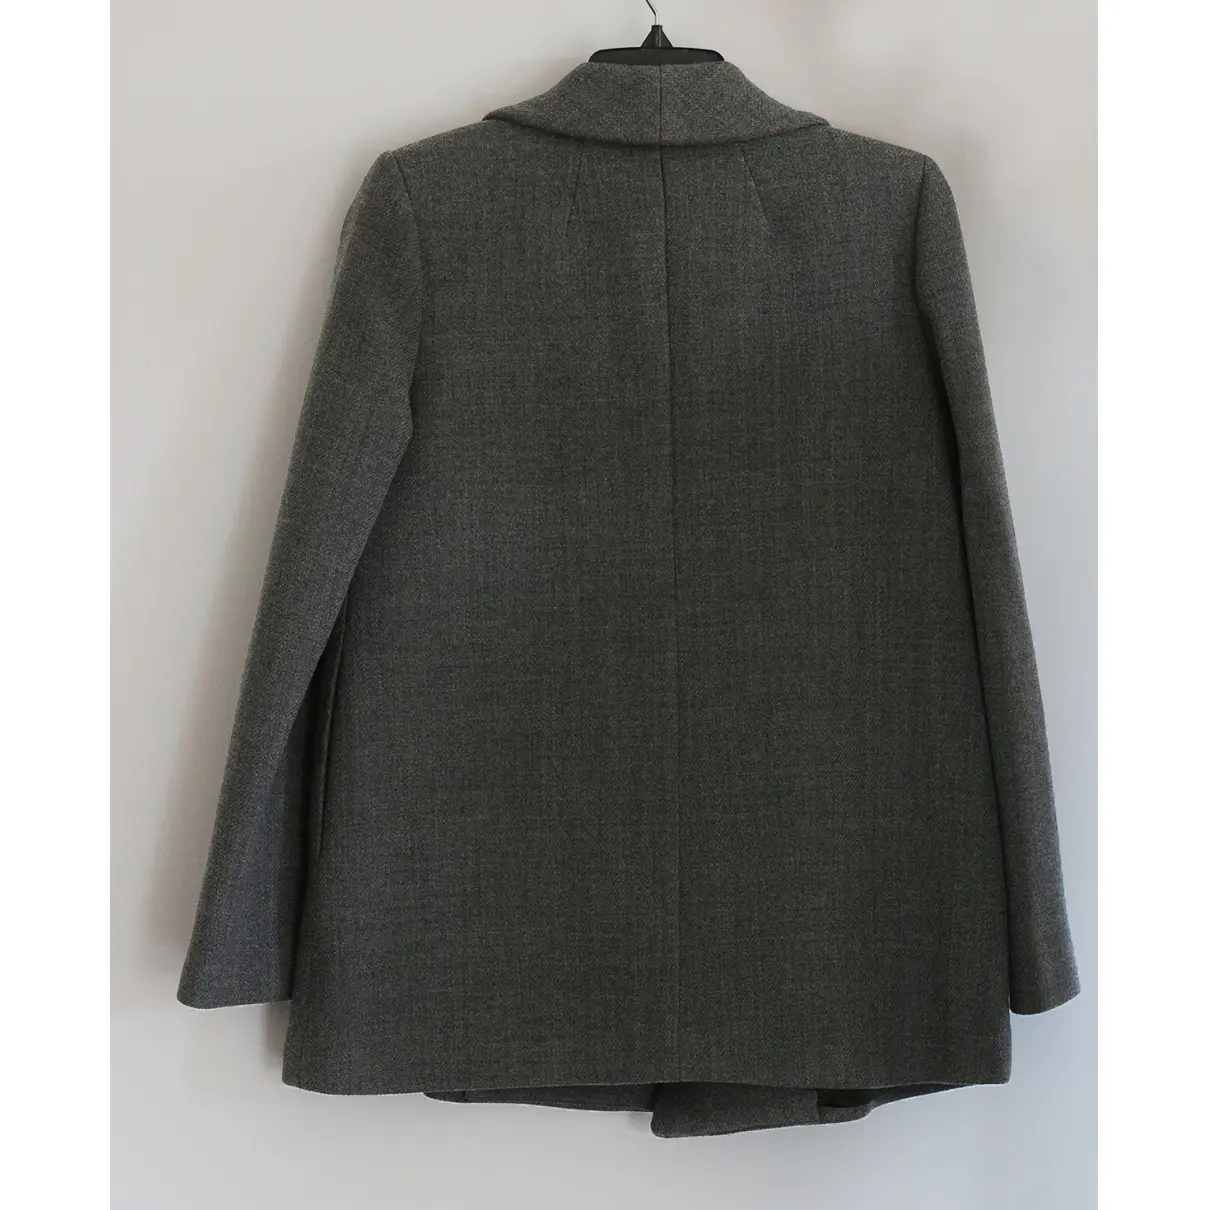 Buy Milly Wool coat online